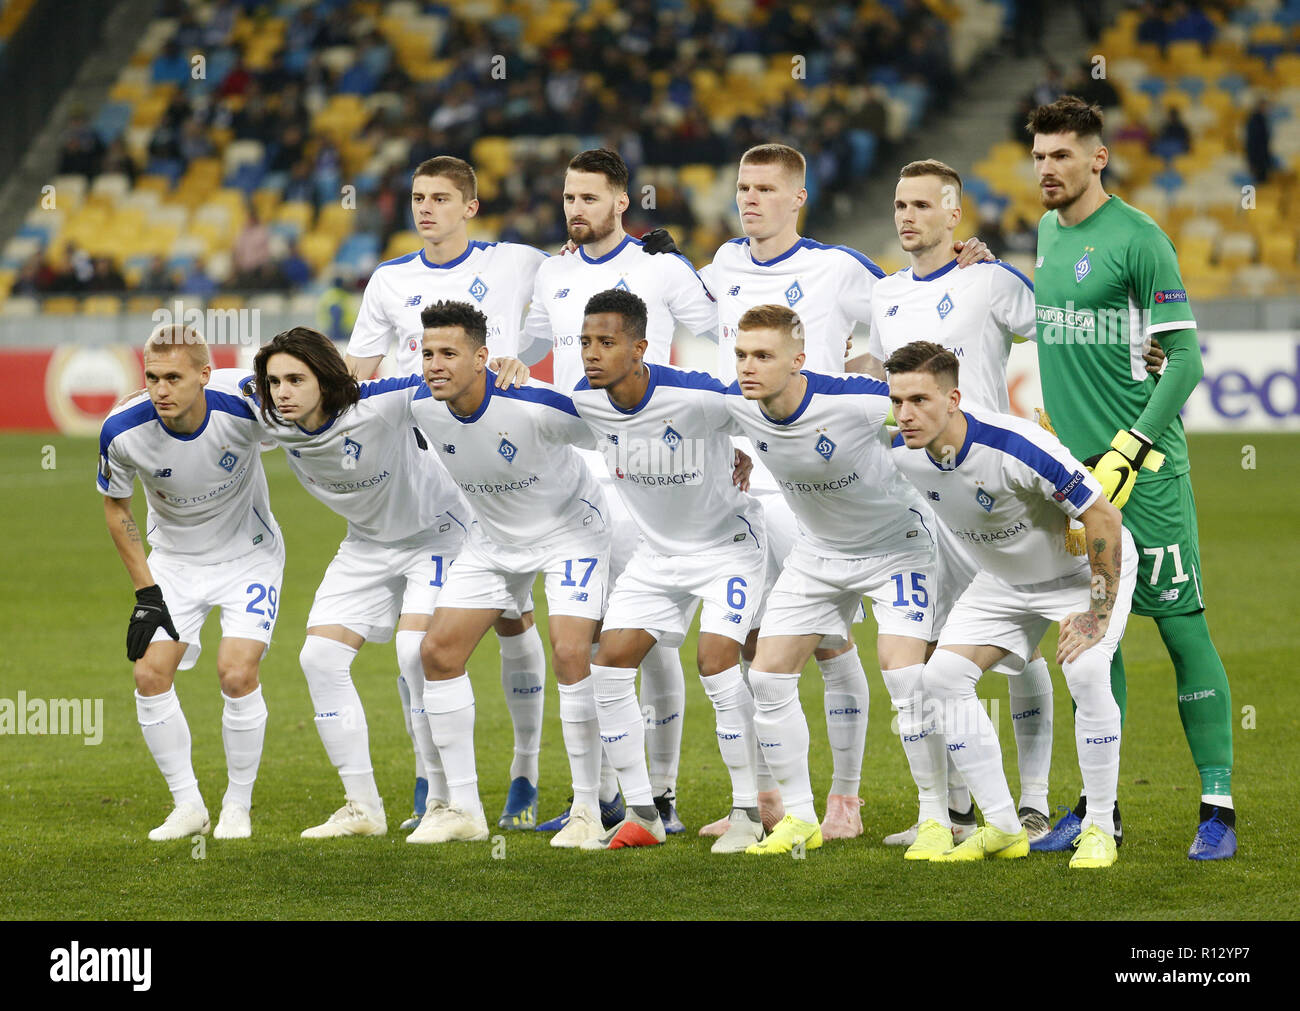 Les joueurs de Dynamo pose au cours de l'UEFA Europa League Groupe K match  de foot entre FC Dynamo Kiev et FC Rennes à la NSK Olimpiyskyi à Kiev,  Ukraine, le 8